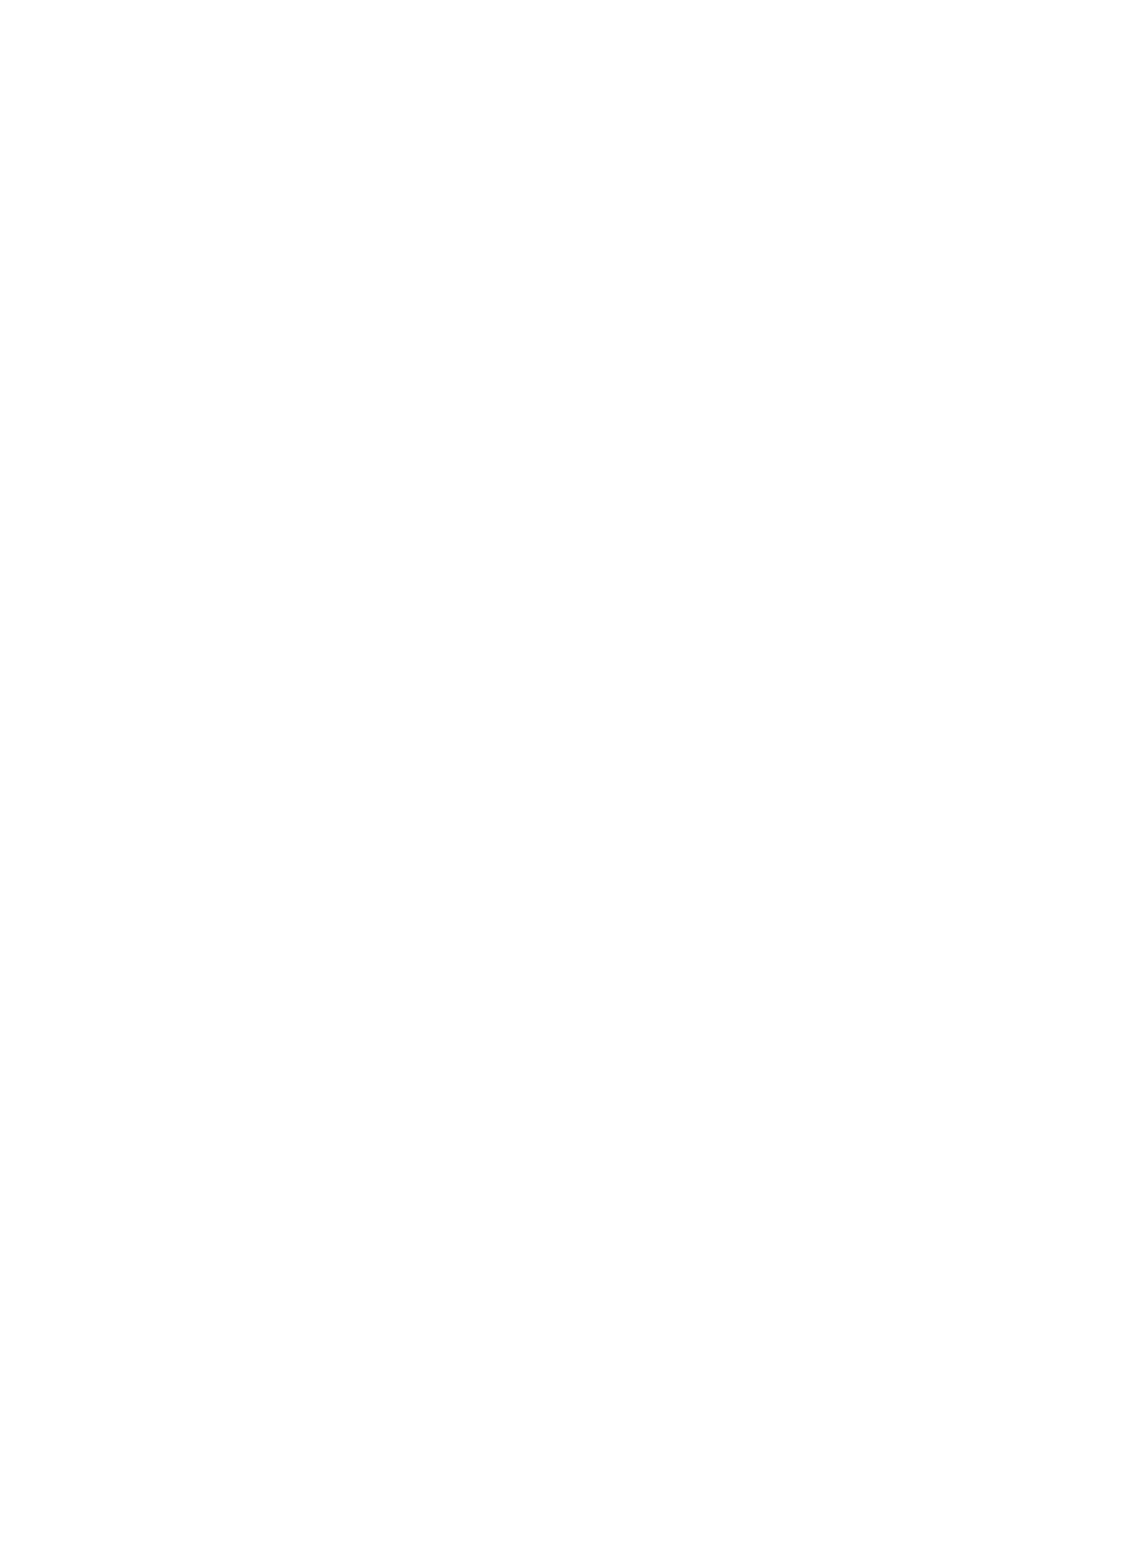 Matthew Perry október 19-én publikált képén az a jakuzzi/medence látható, ahol végül a halál is érte őt. A fotót sötétben készítette, így jól kivehető, hogy a vízben szintén az összetéveszthetetlen Bat Symbol világít pirosan. 